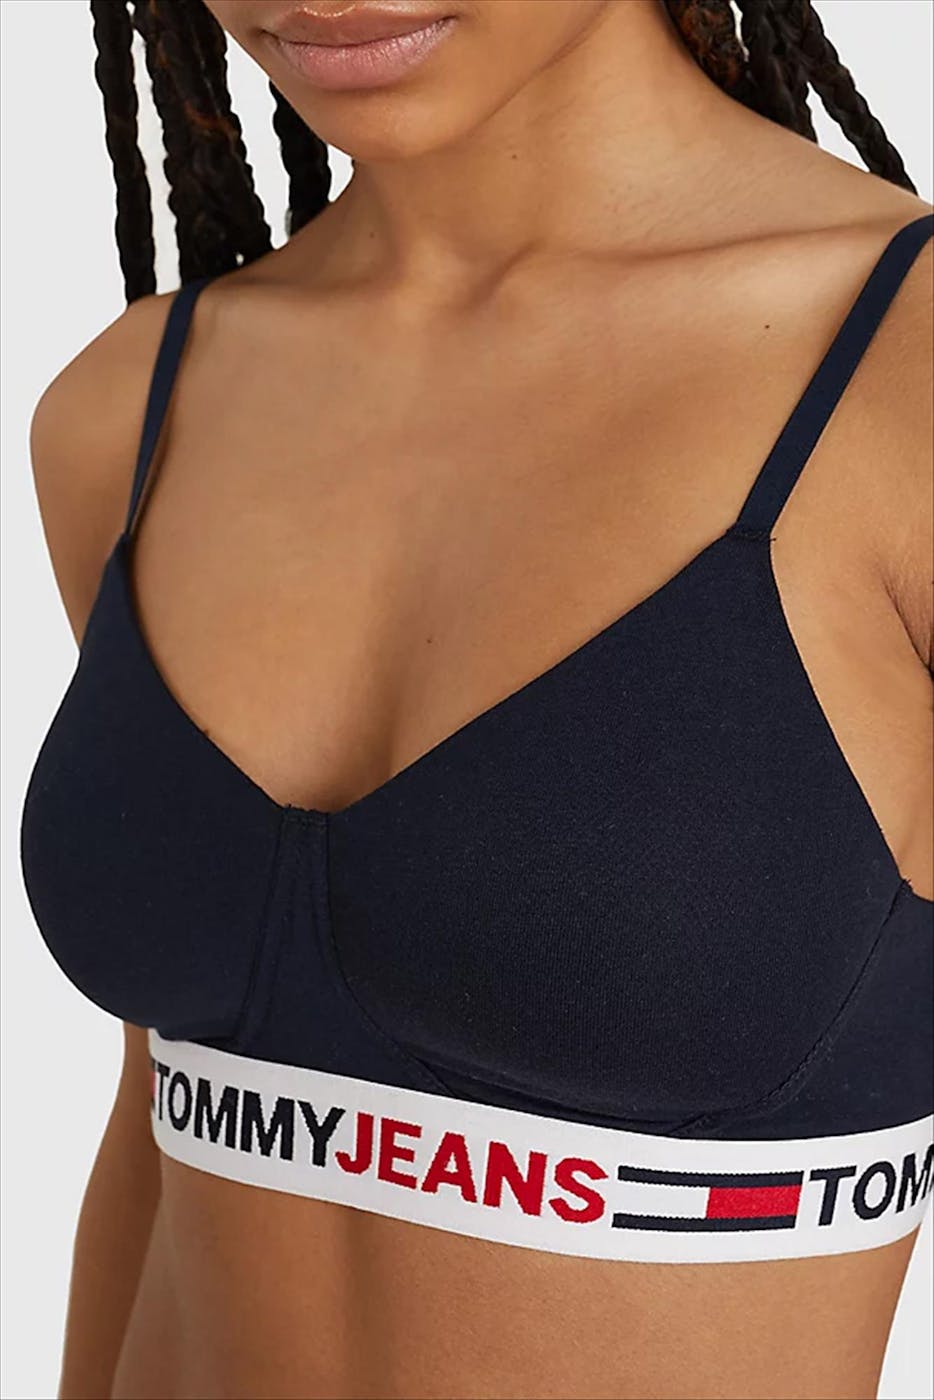 Tommy Hilfiger Underwear - Donkerblauwe Logo bralette